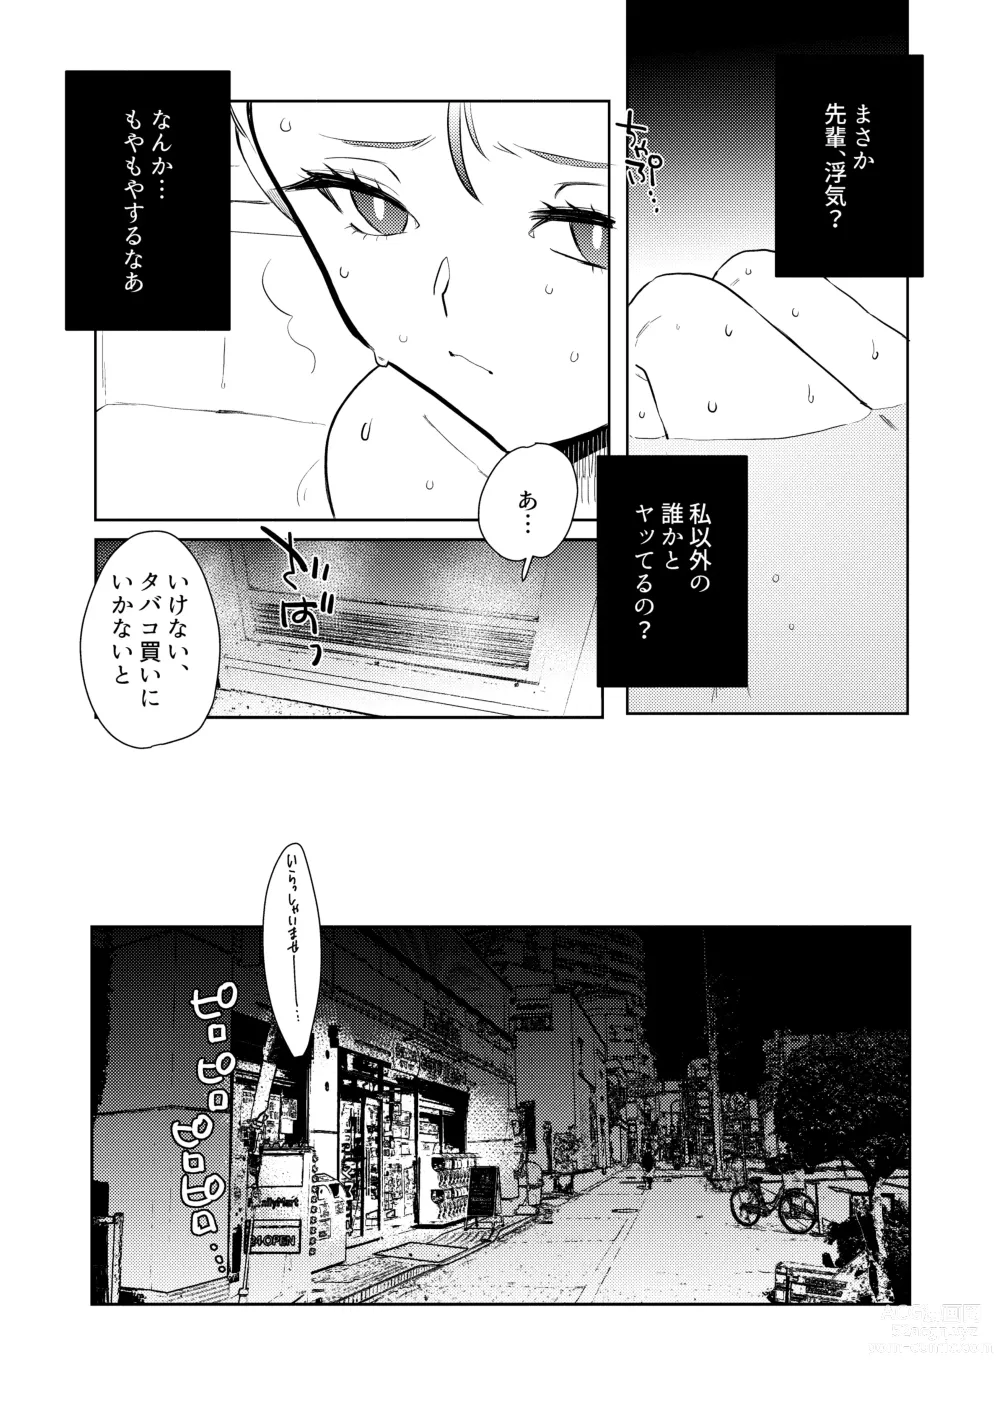 Page 25 of doujinshi Semete Saigo no Keshiki ni Naritai.